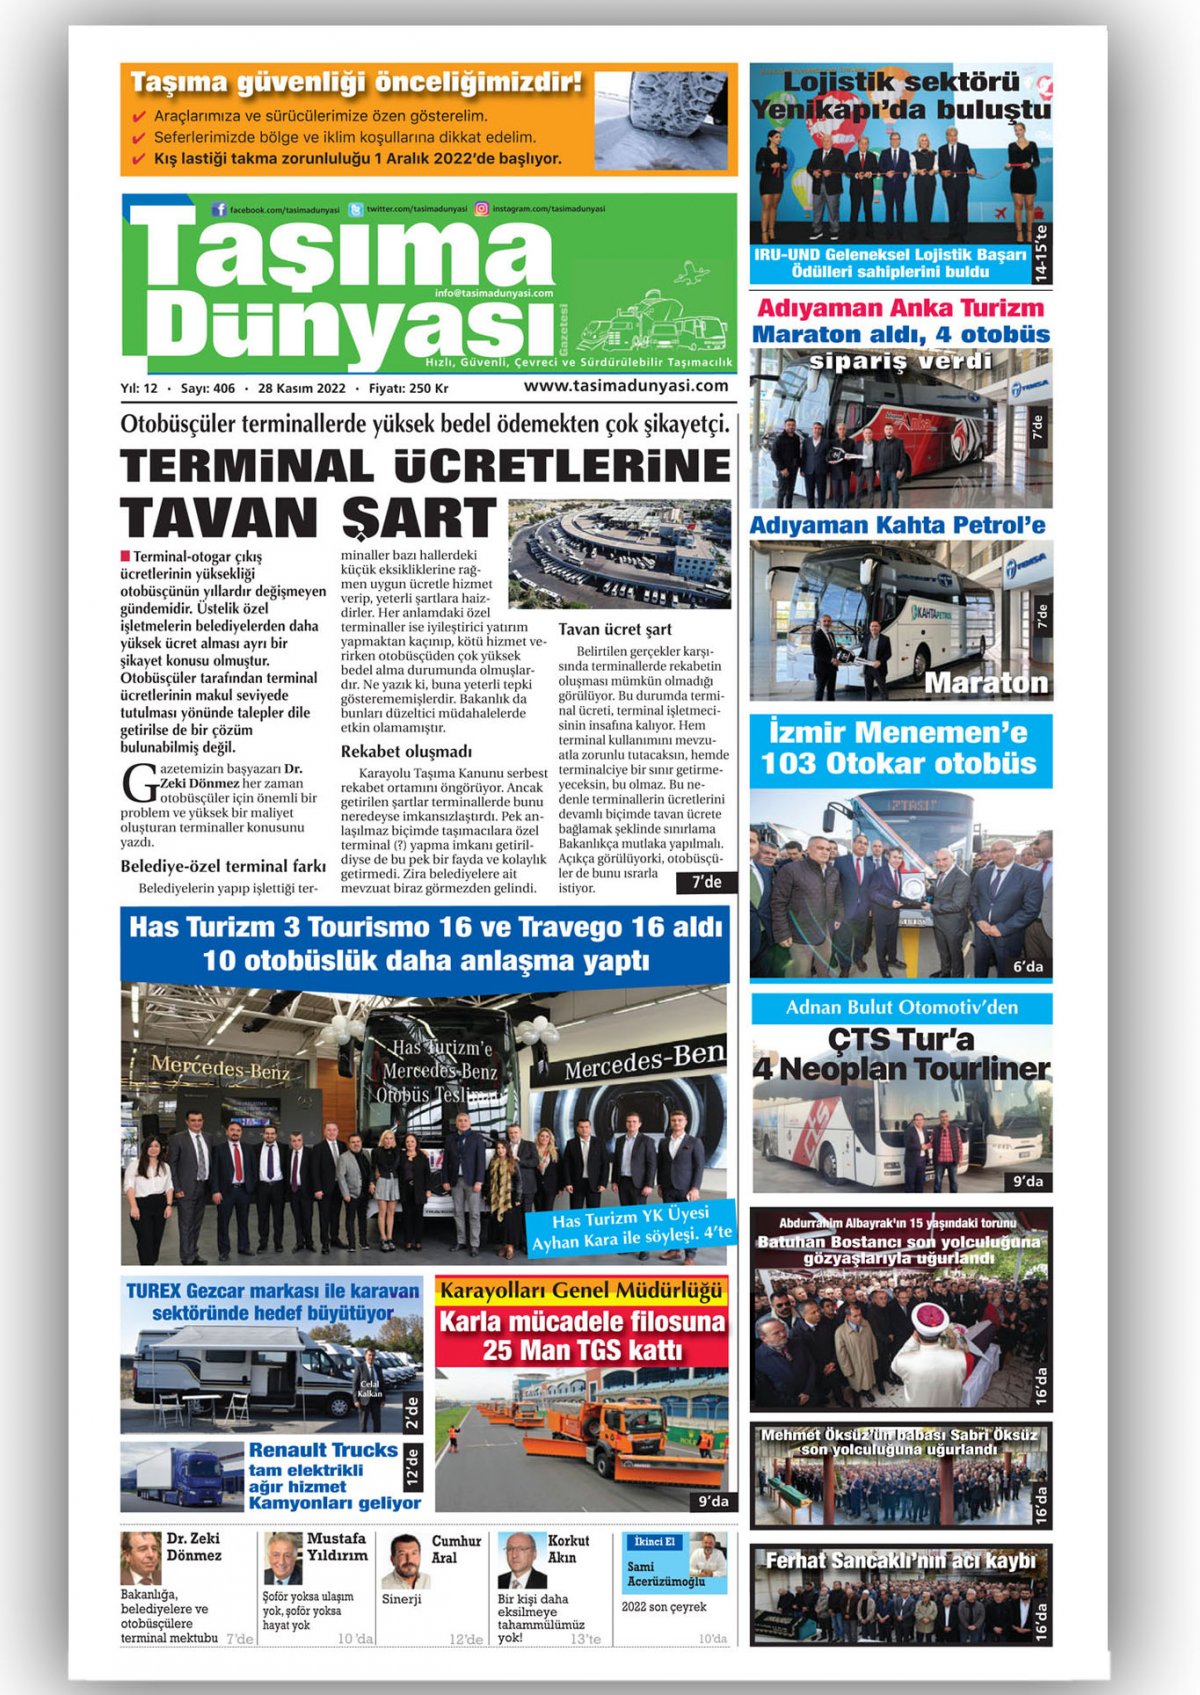 Taşıma Dünyası Gazetesi - 28.11.2022 Manşeti